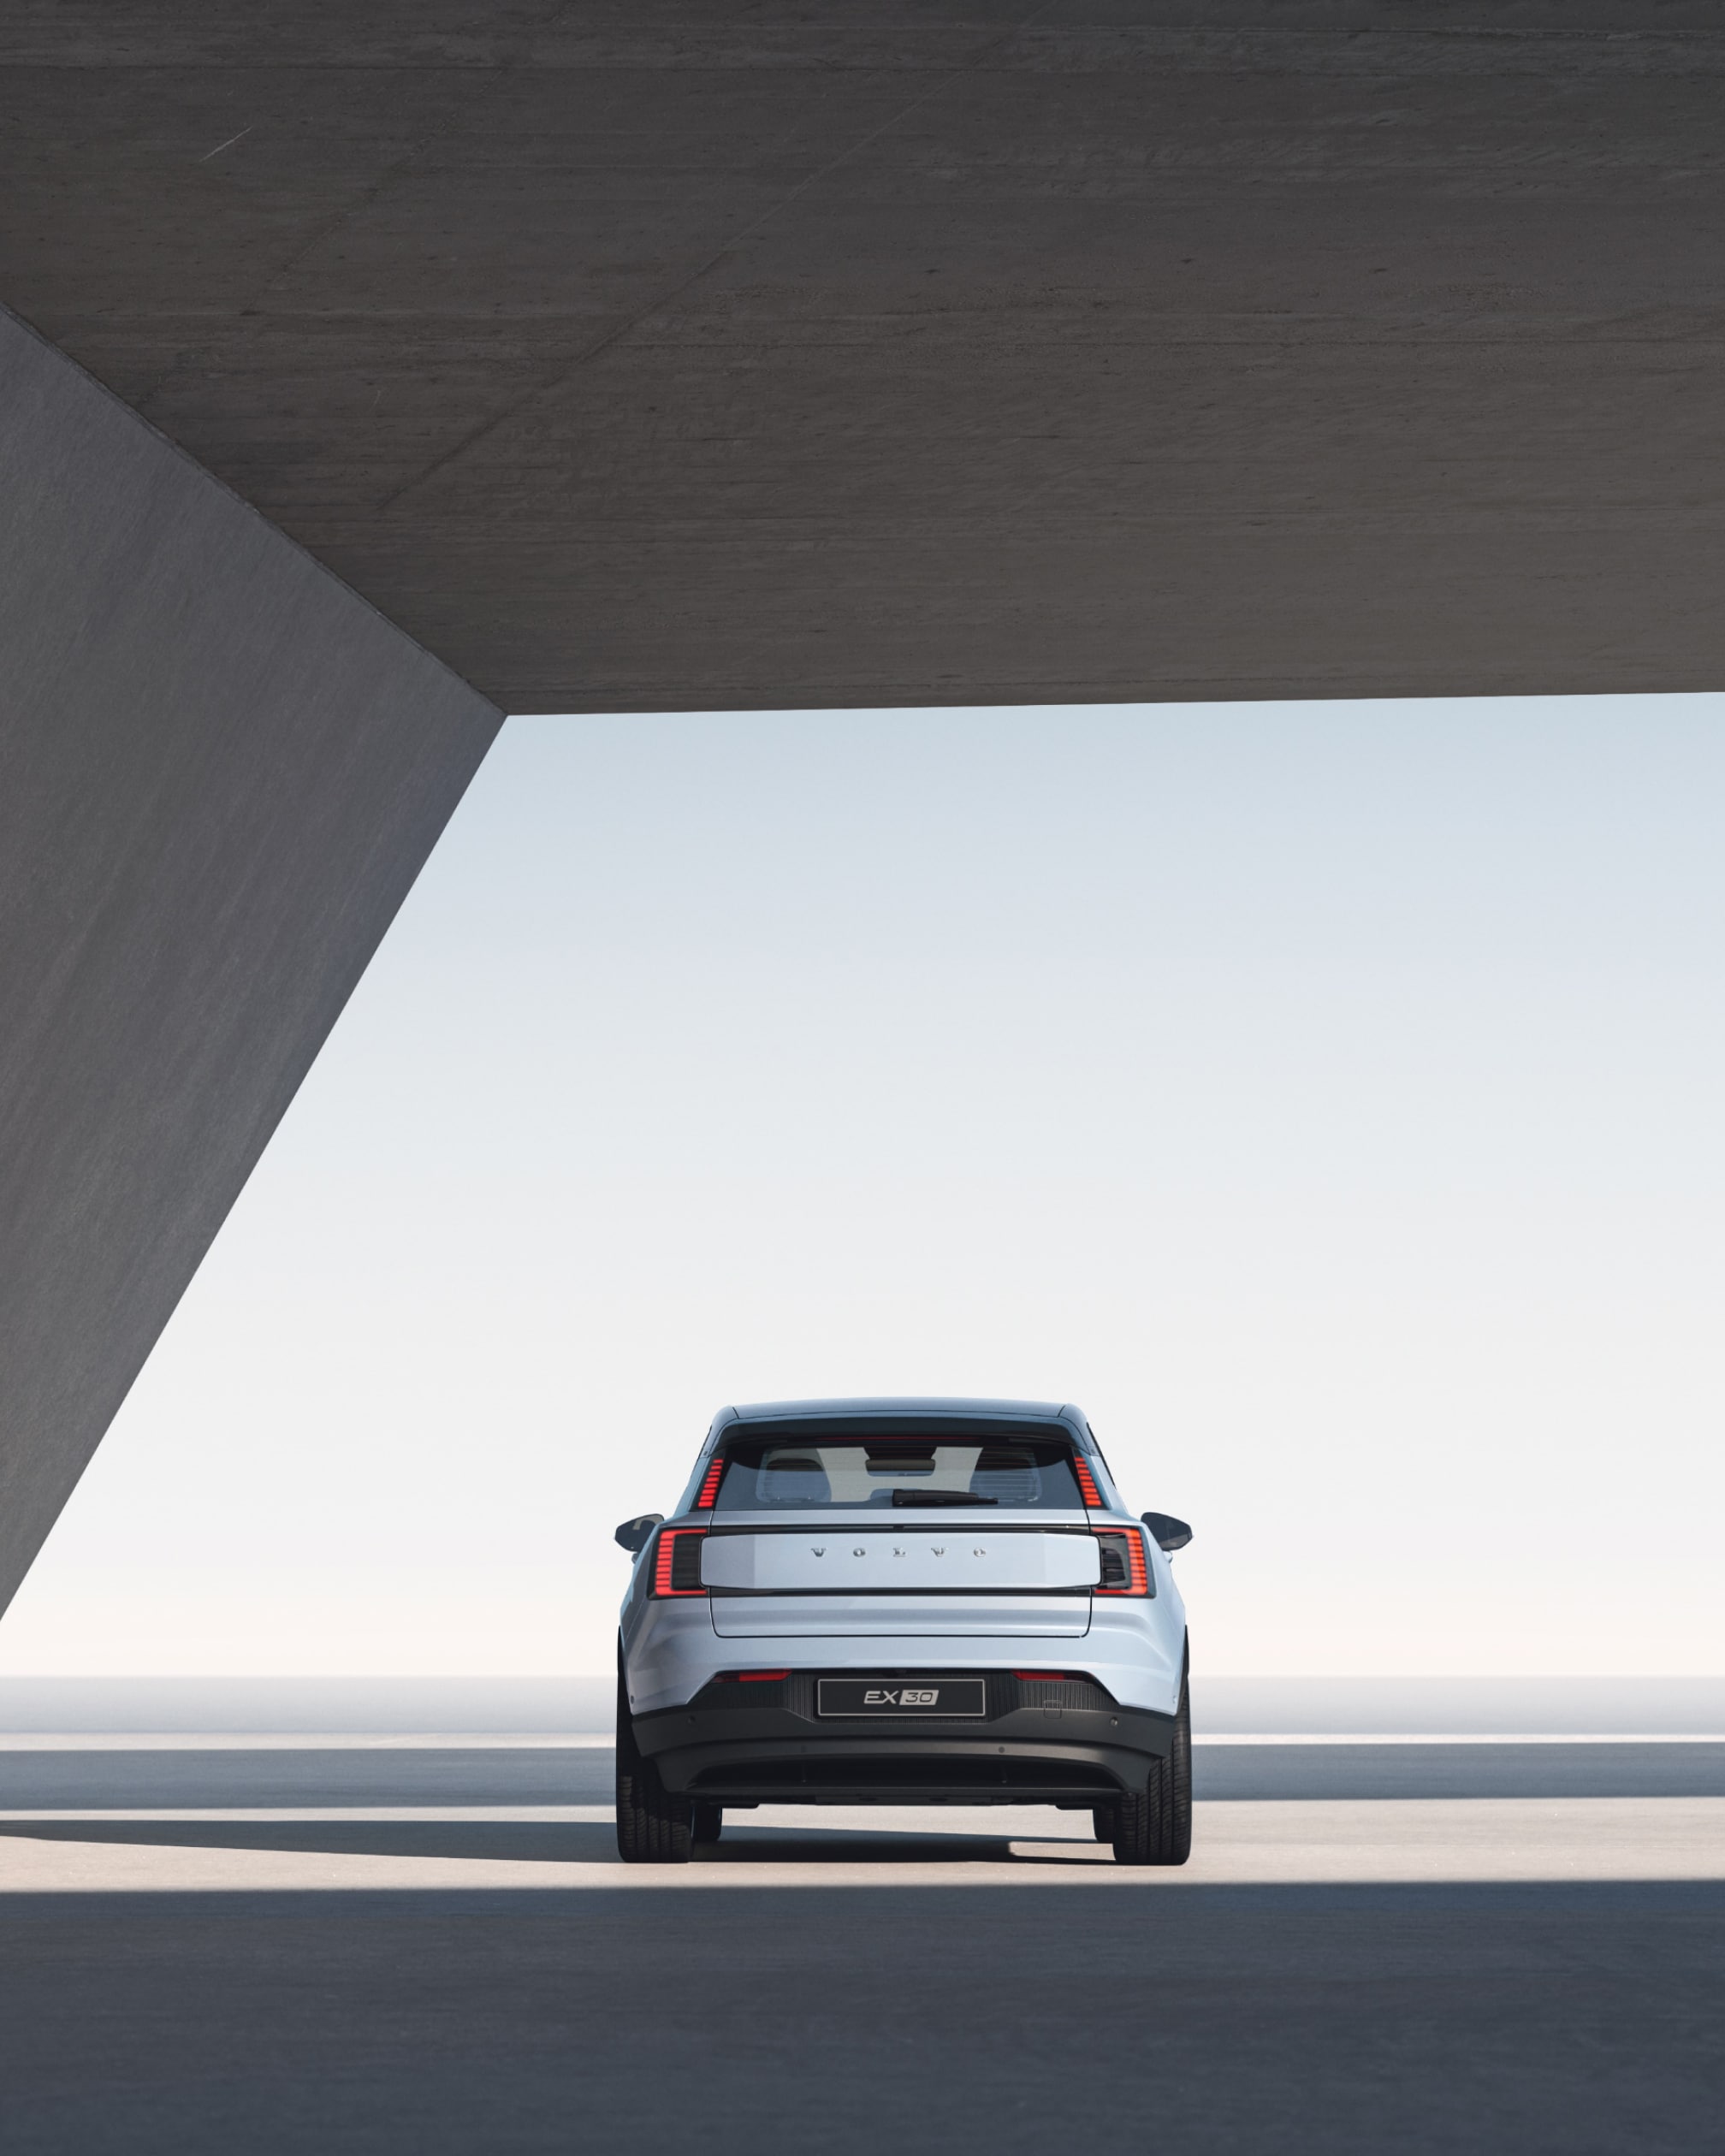 Günəş işığı şüasında açıq tərəfli beton konstruksiya altında park edilmiş Volvo EX30 avtomobilinin arxa hissəsinin geniş bucaq altında təsviri.